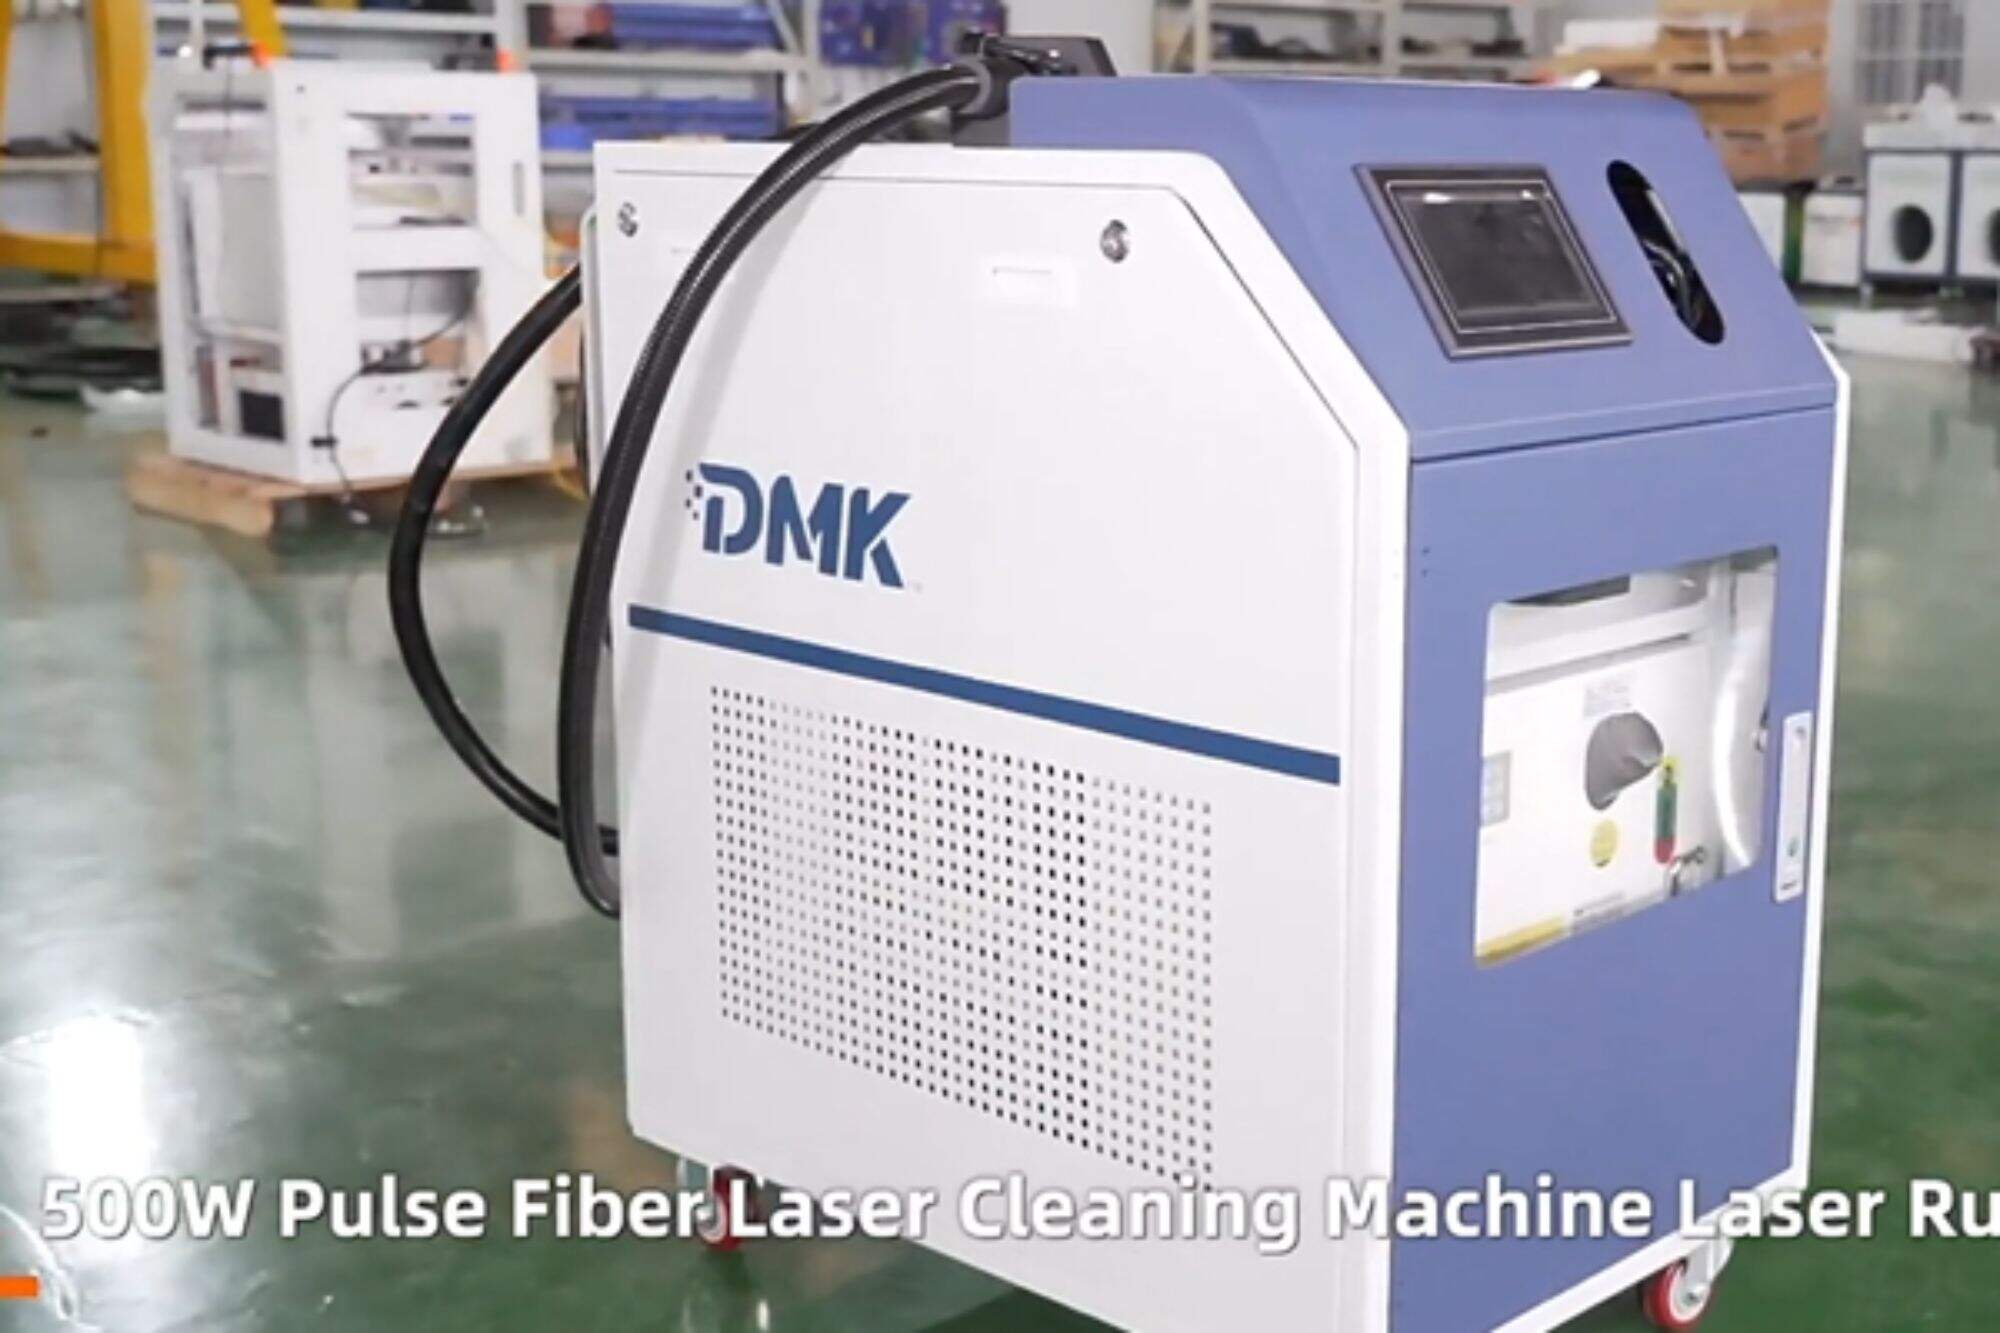 Laserowa maszyna czyszcząca impulsowa DMK 500w